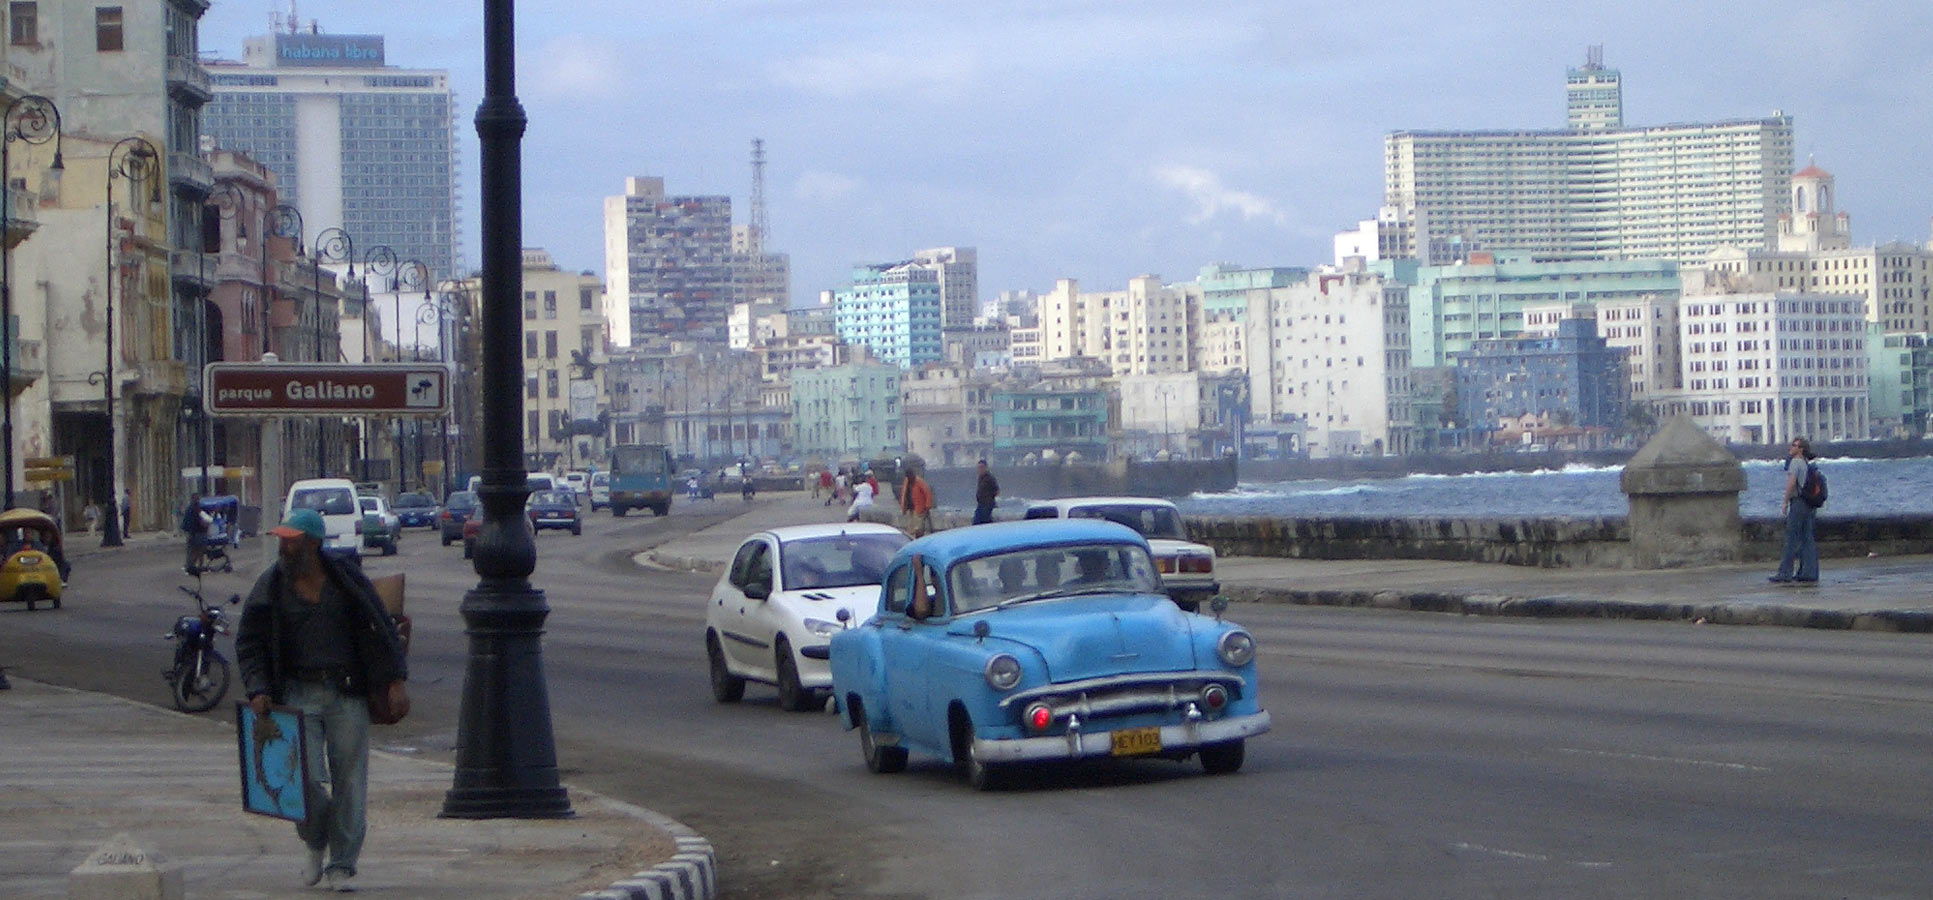 Travel reviews Cuba